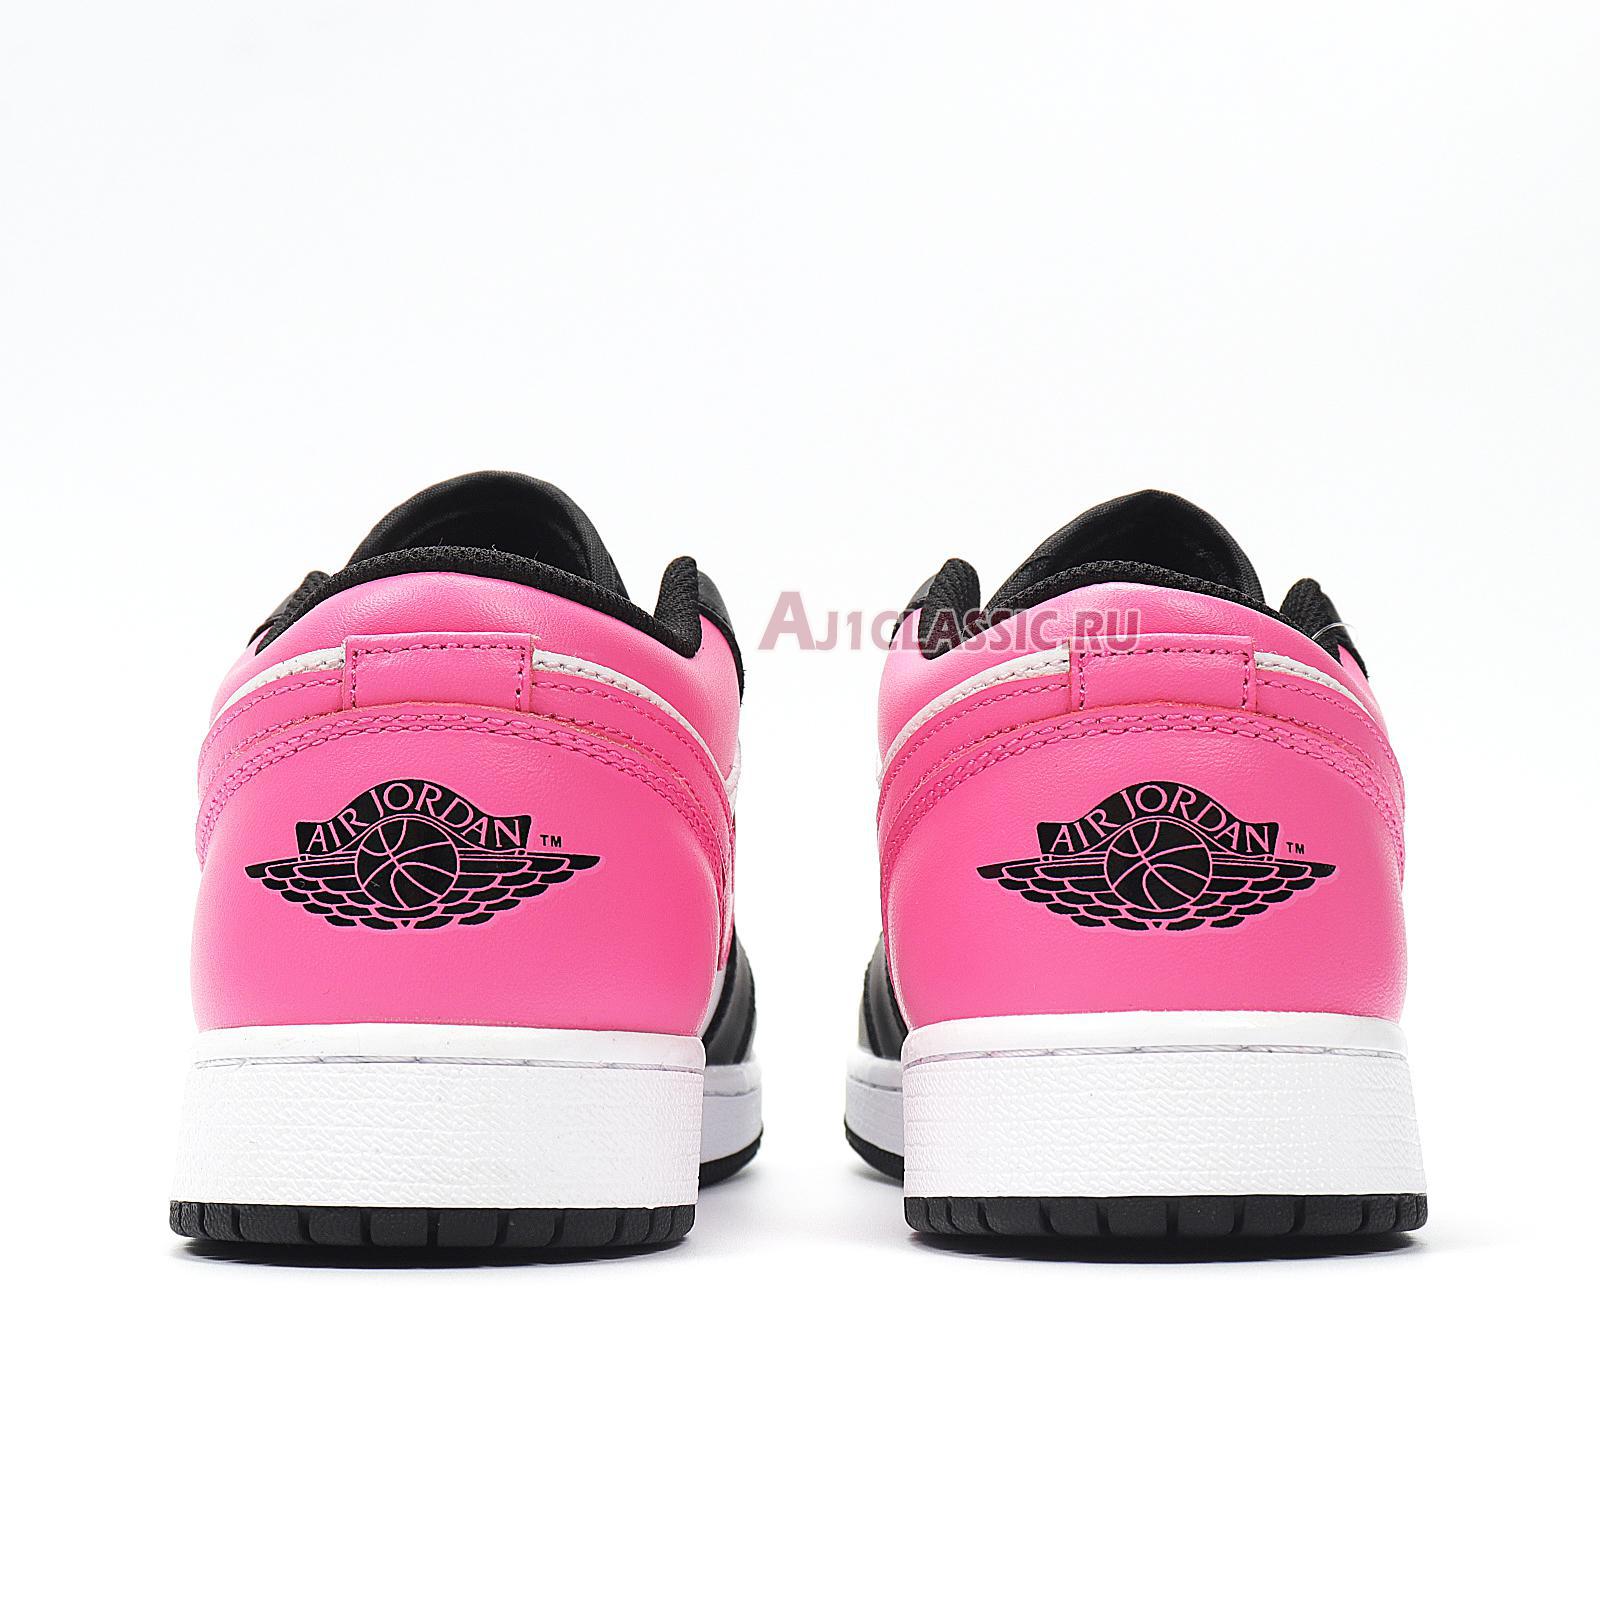 Air Jordan 1 Retro Low "Pinksicle" 554723-106